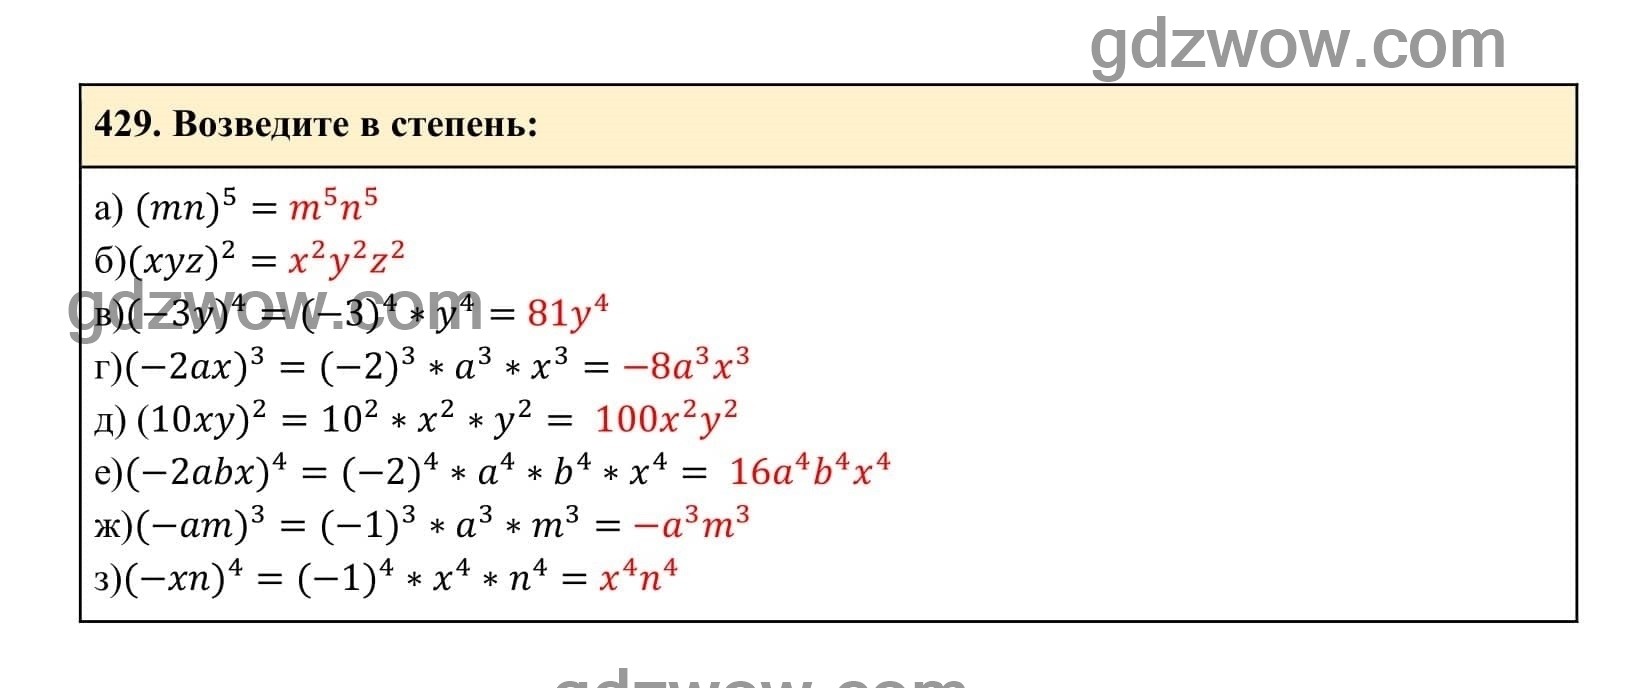 Упражнение 429 - ГДЗ по Алгебре 7 класс Учебник Макарычев (решебник) - GDZwow